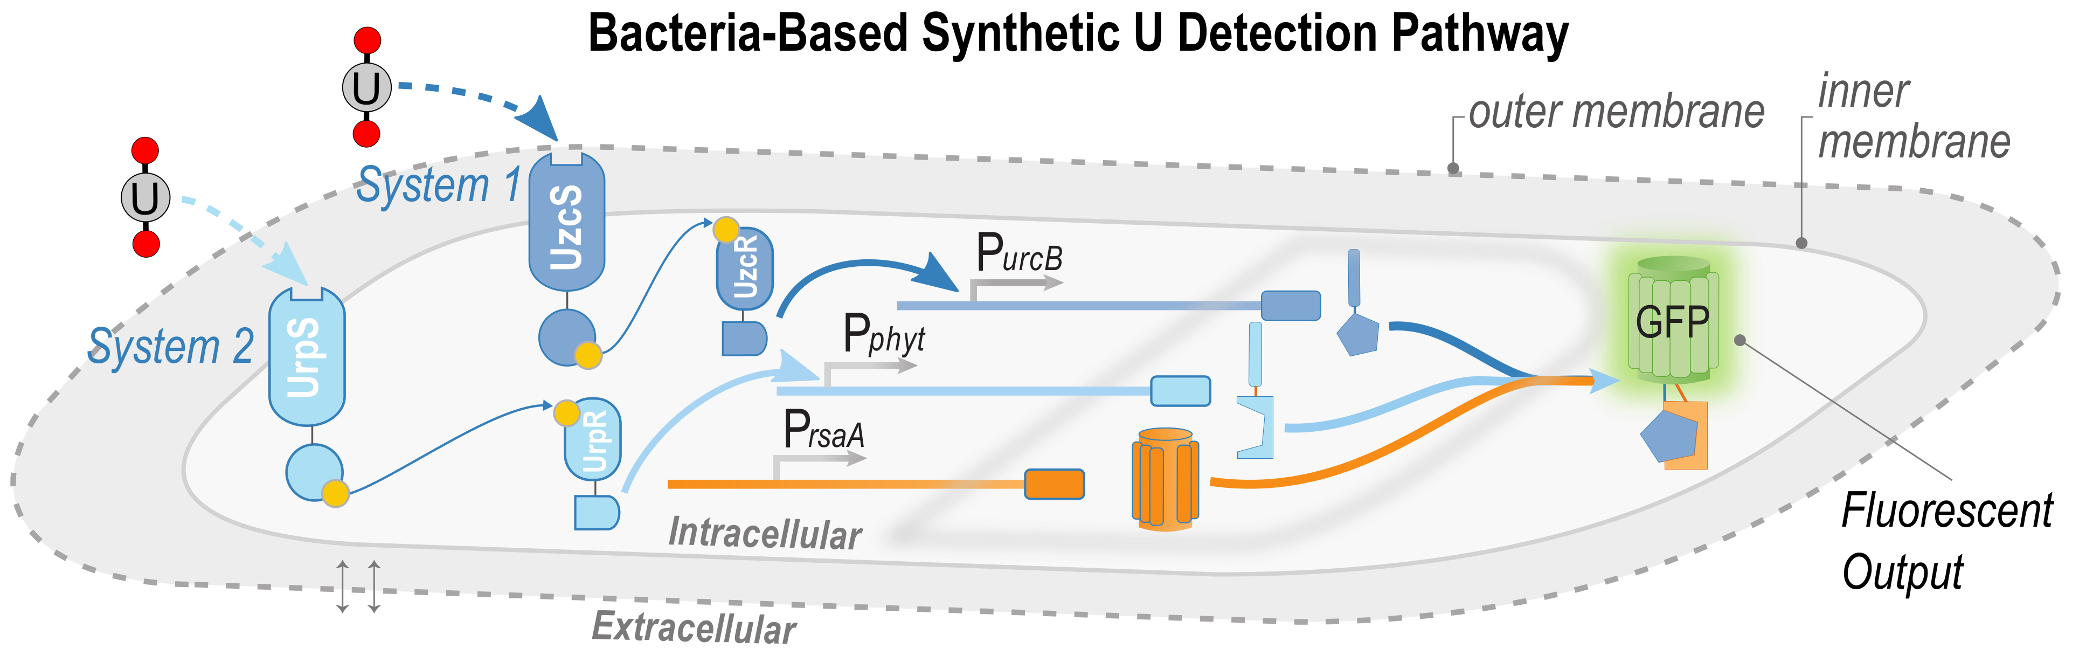 bacteria-based_synthetic_u_detection_pathway